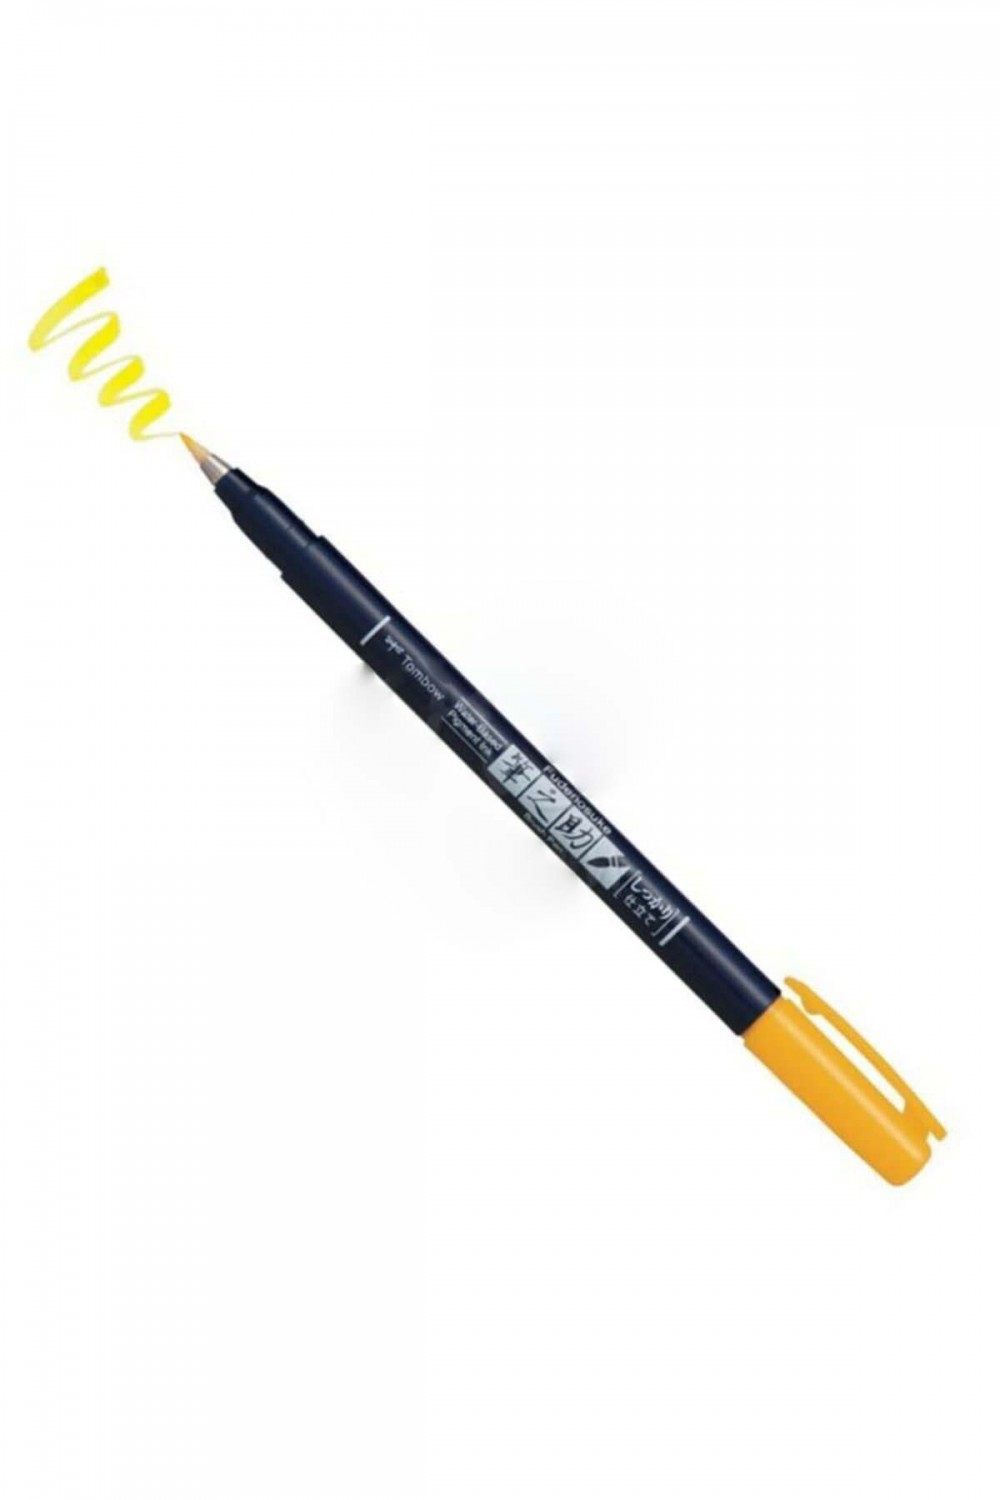 Tombow Fudenosuke Brush Pen Fırça Uçlu Kalem Sert Uç - Sarı